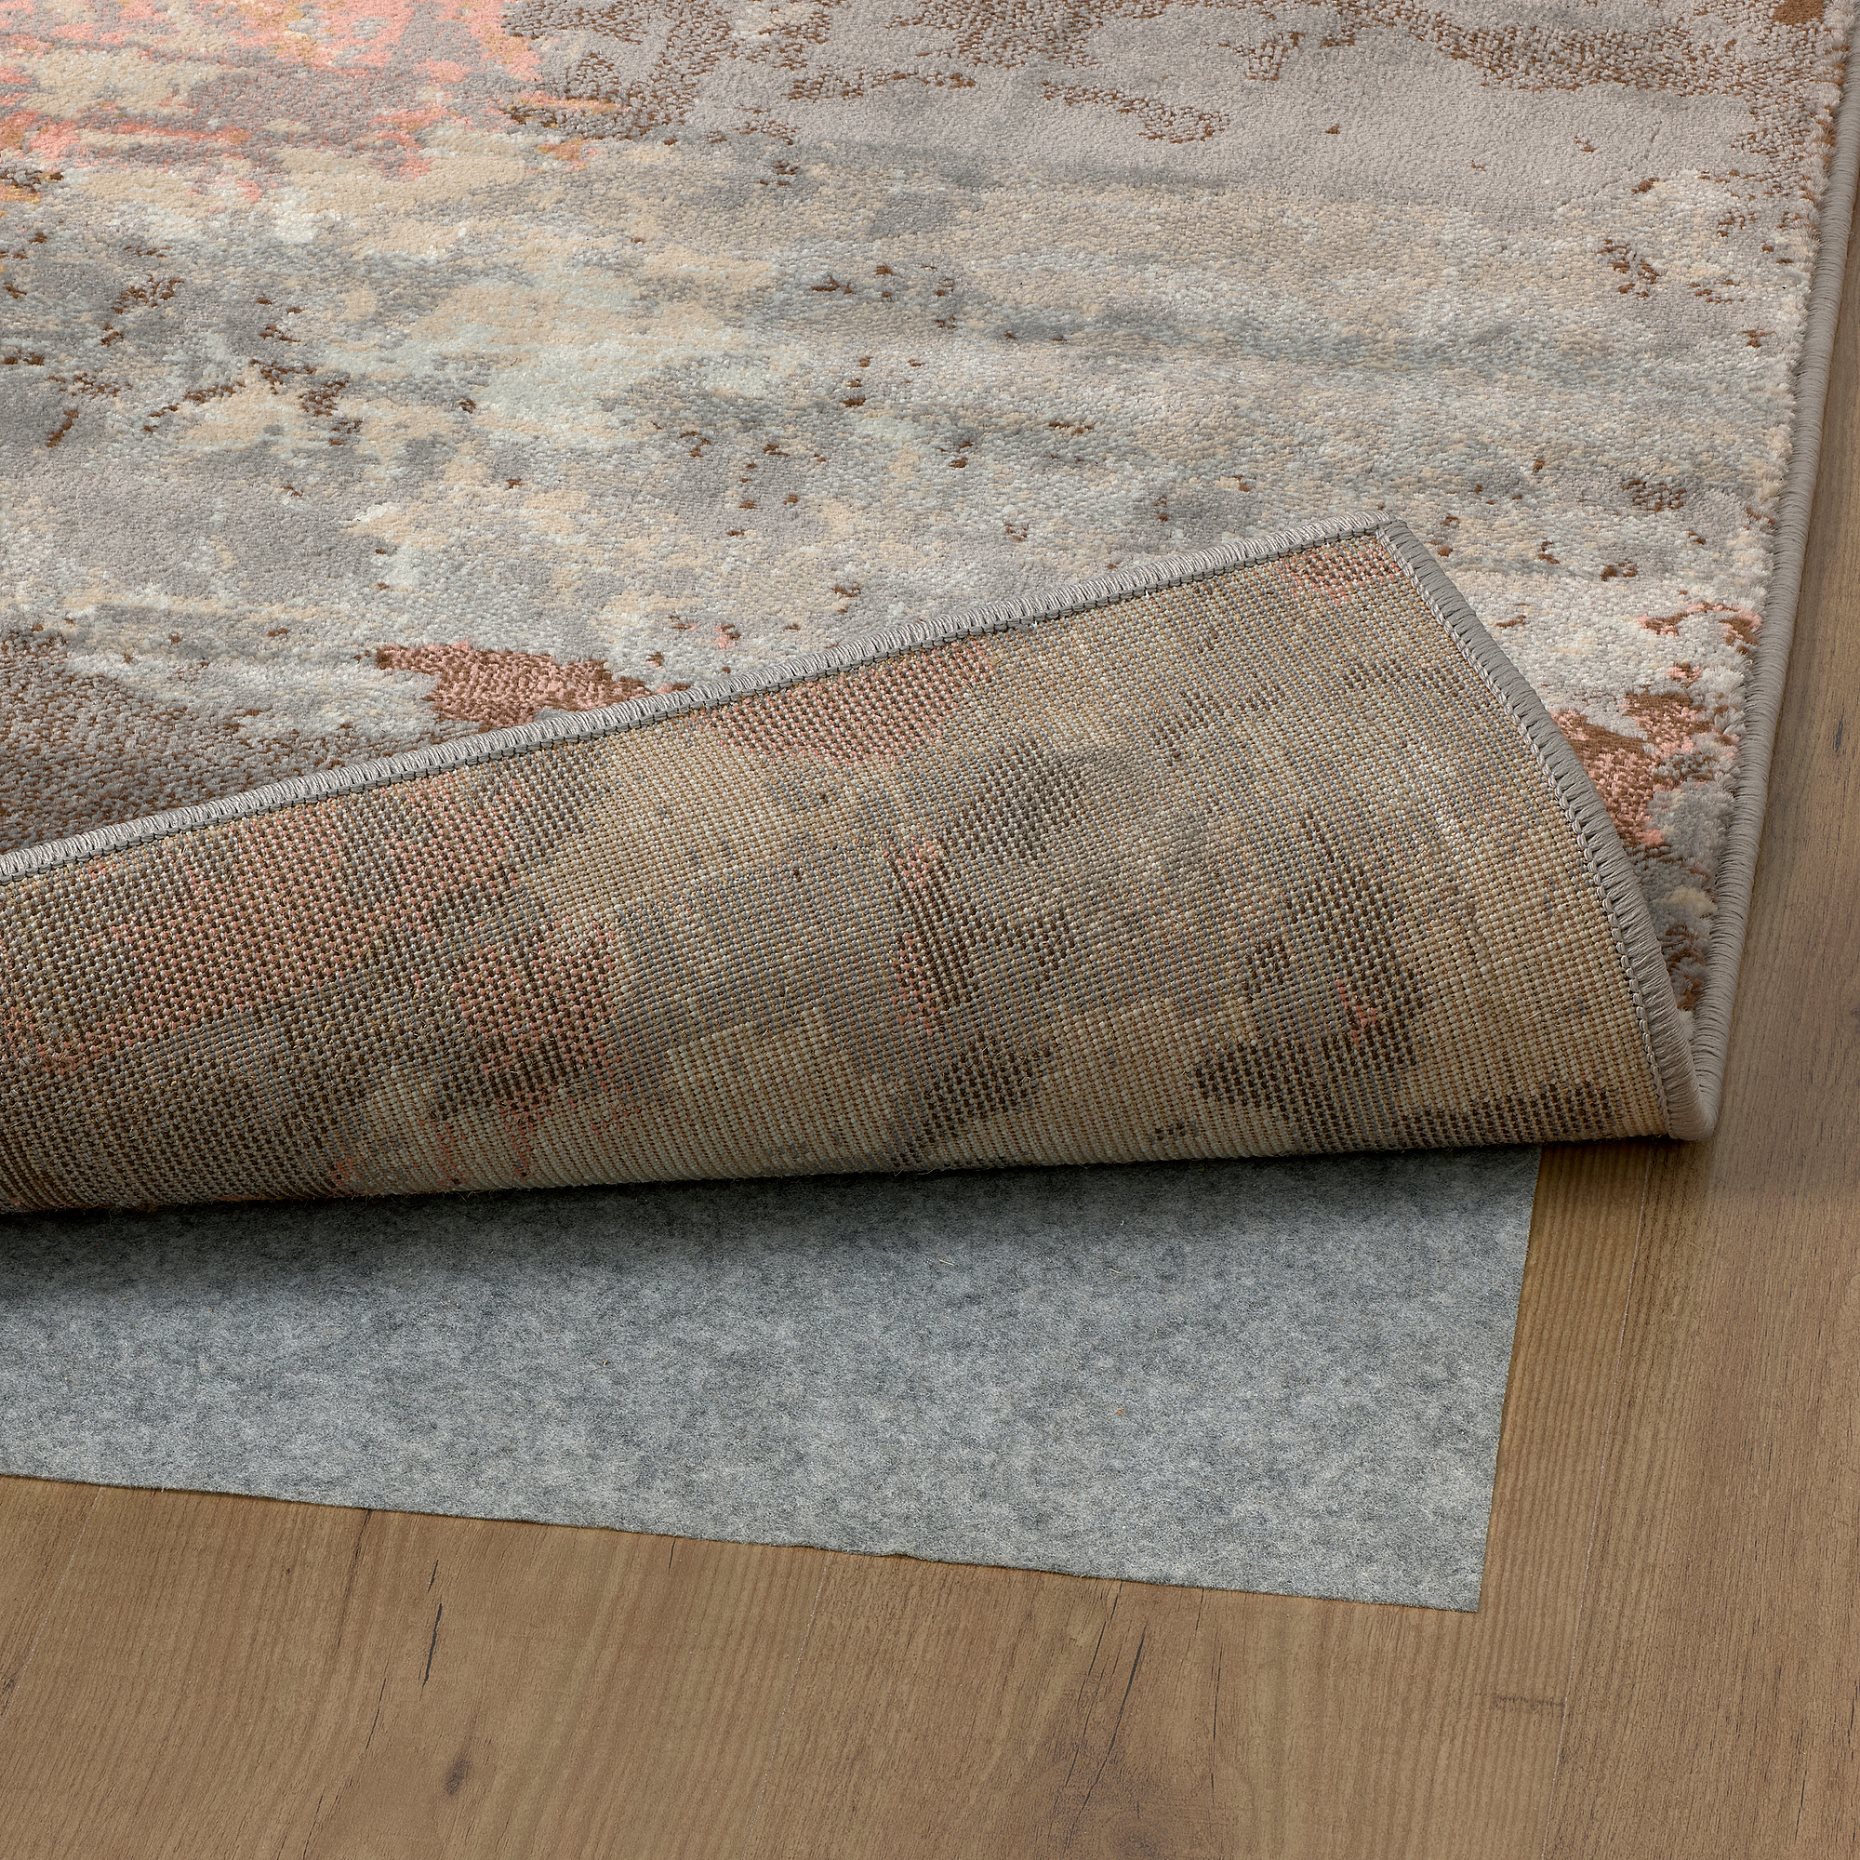 GRUNDSKOLA, rug low pile, 200x300 cm, 205.193.17